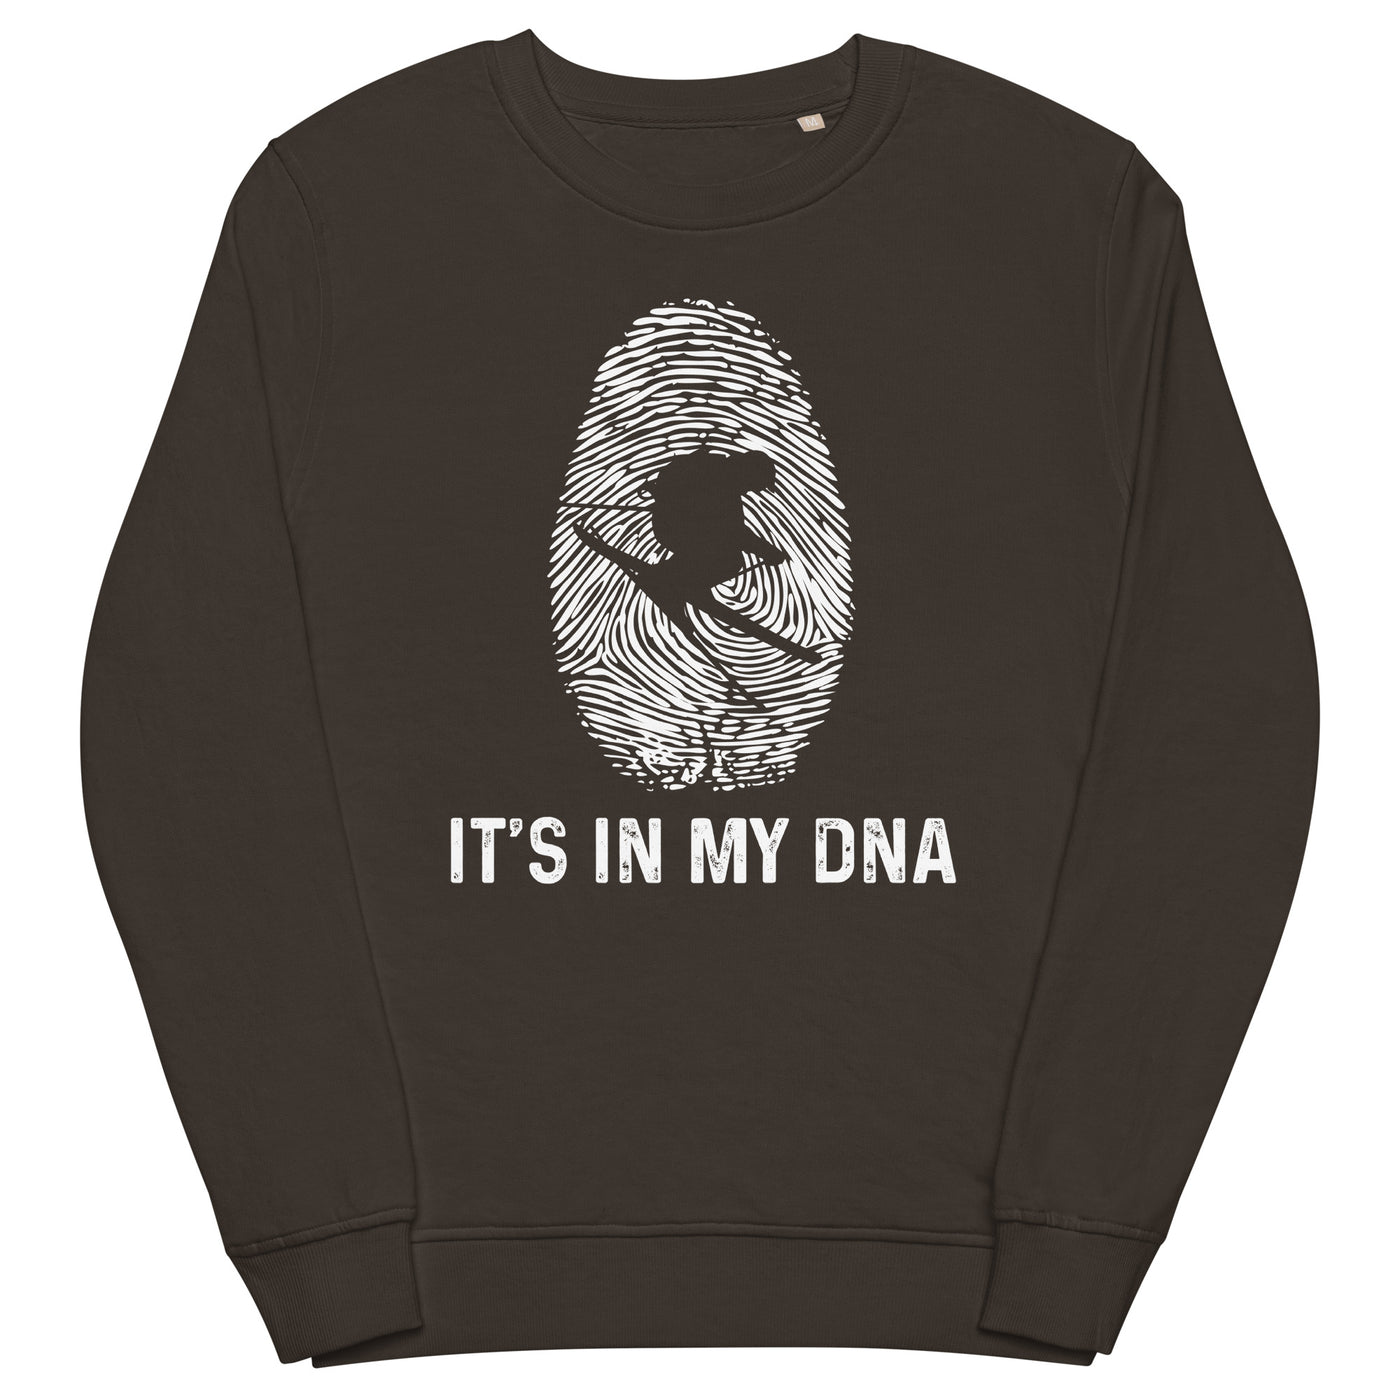 It's In My DNA - Unisex Premium Organic Sweatshirt klettern ski xxx yyy zzz Deep Charcoal Grey